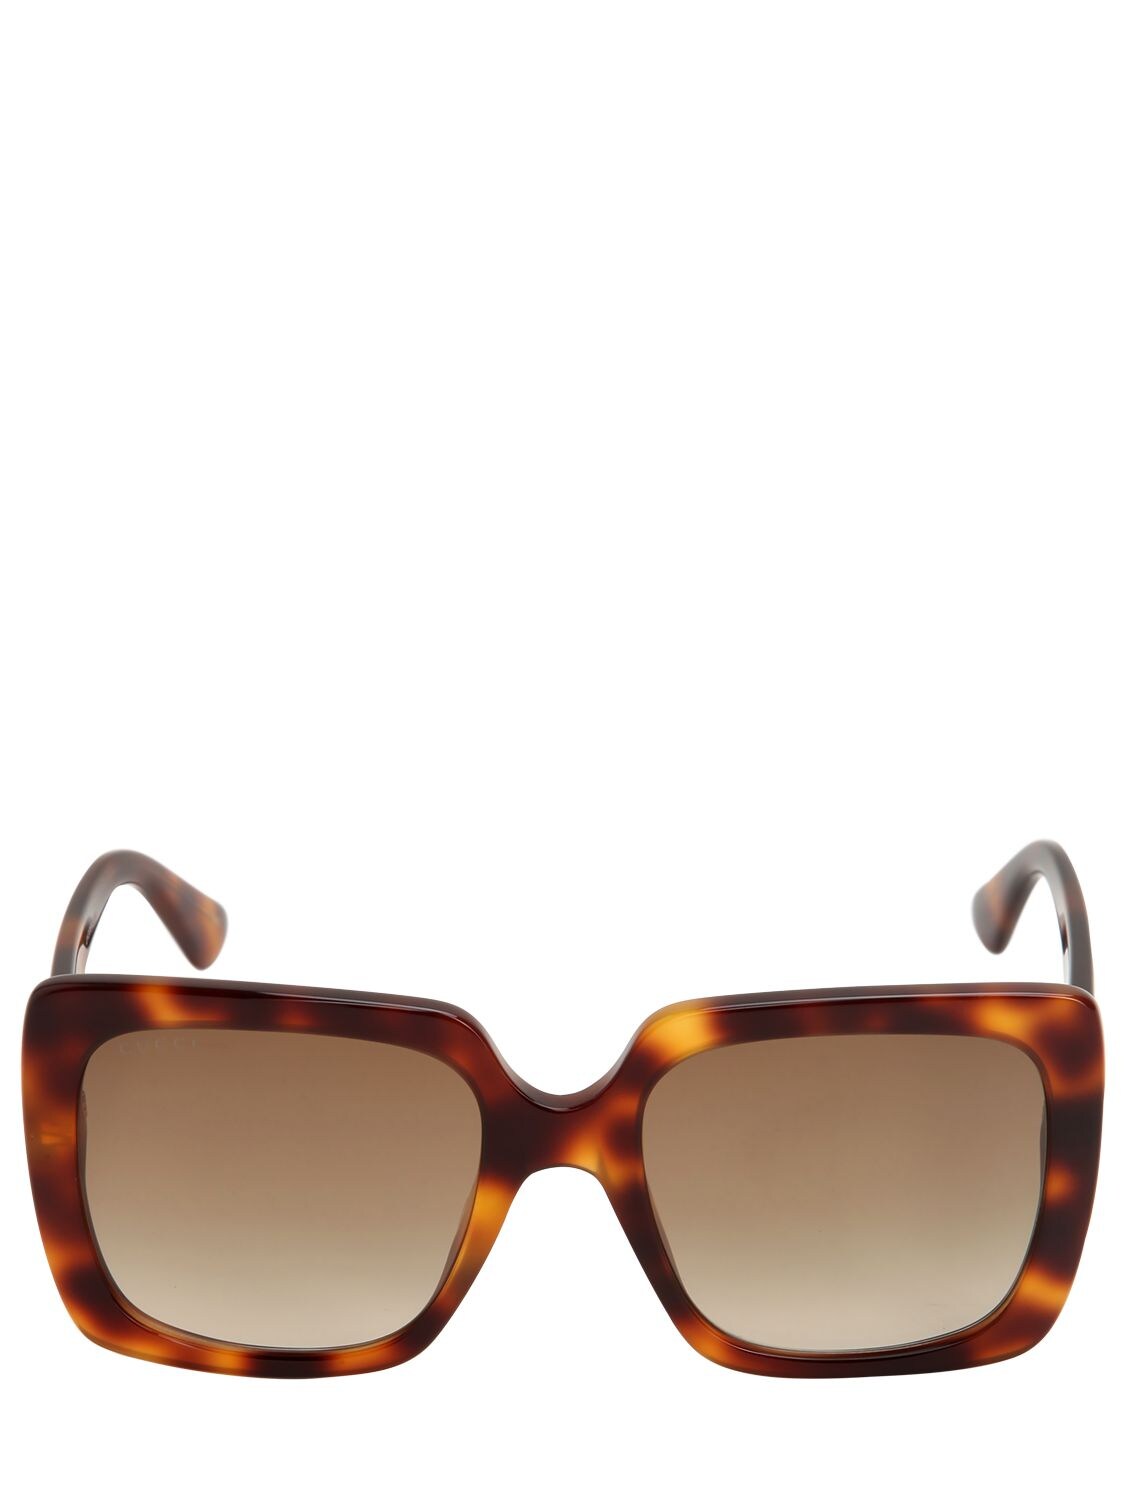 Gucci Square Sunglasses W/ Logo Detail In Brown